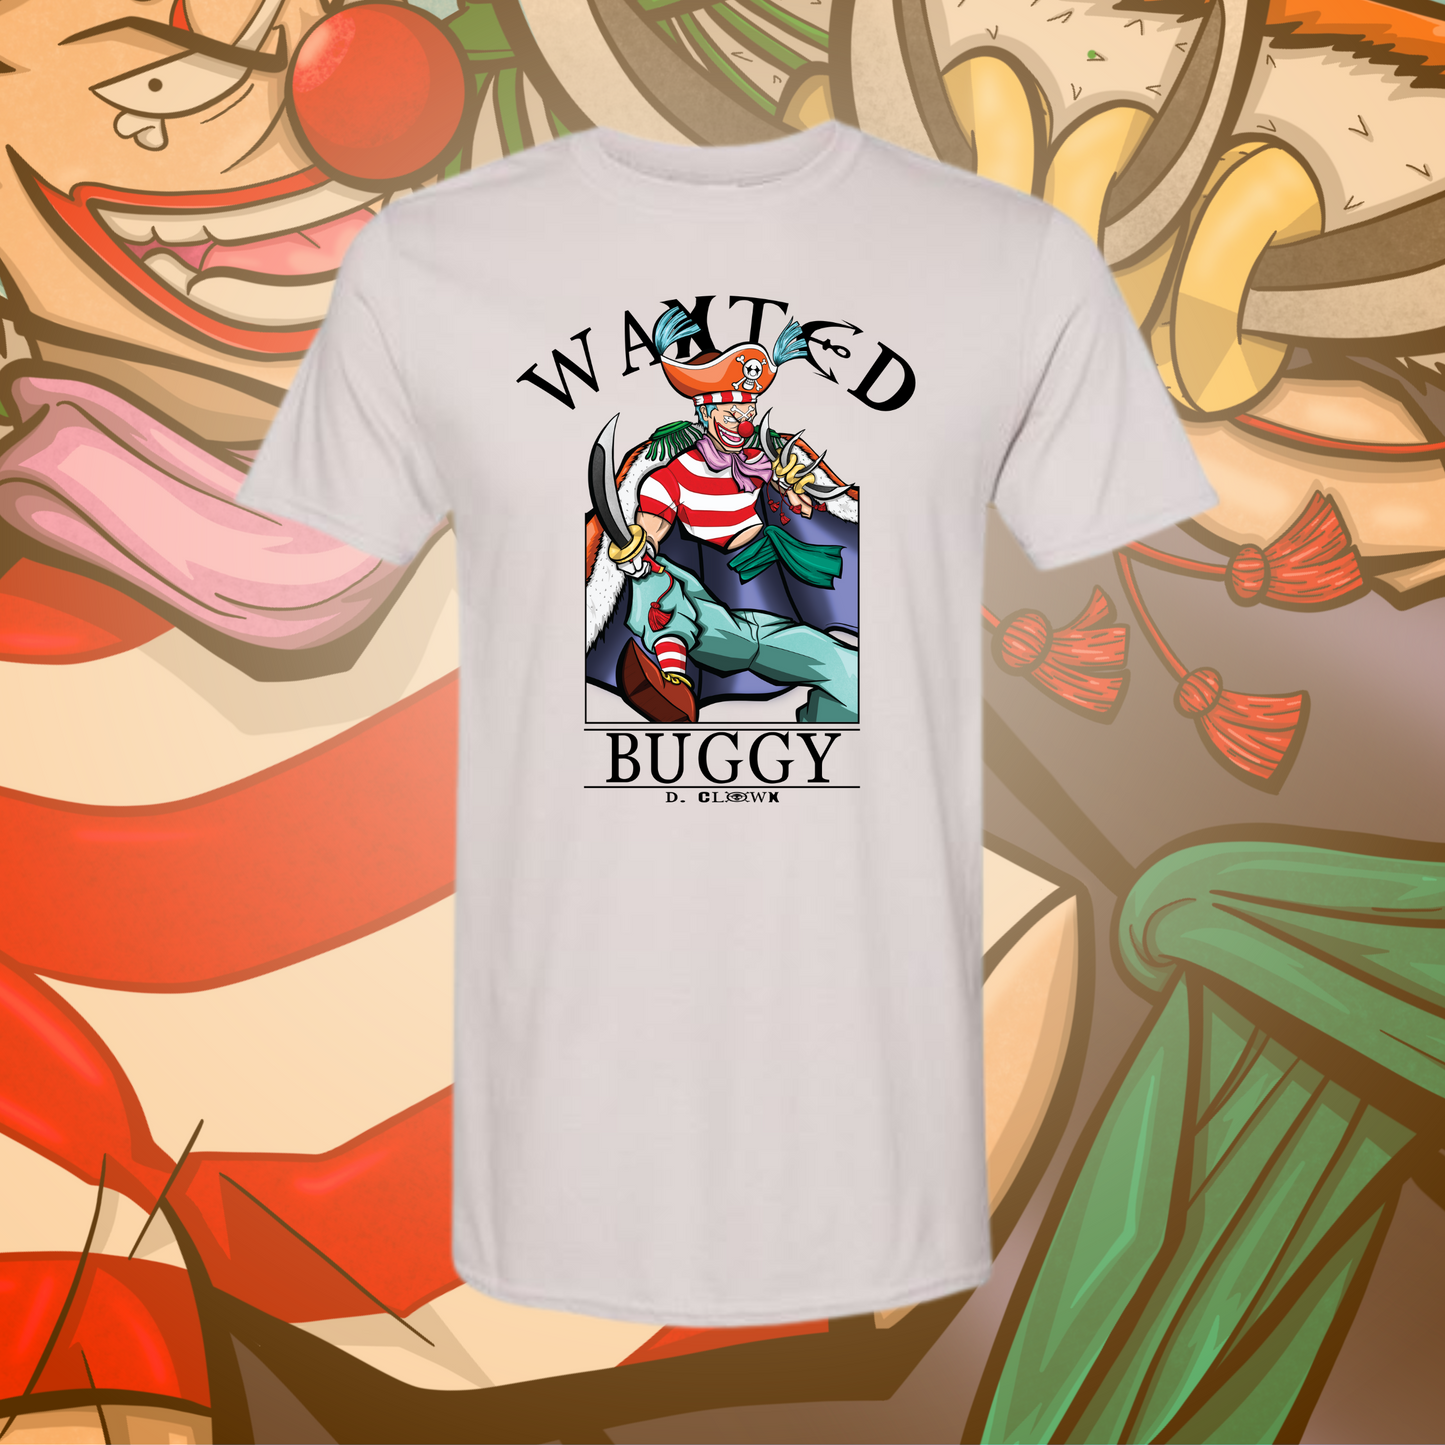 Buggy D. Clown T-Shirt!